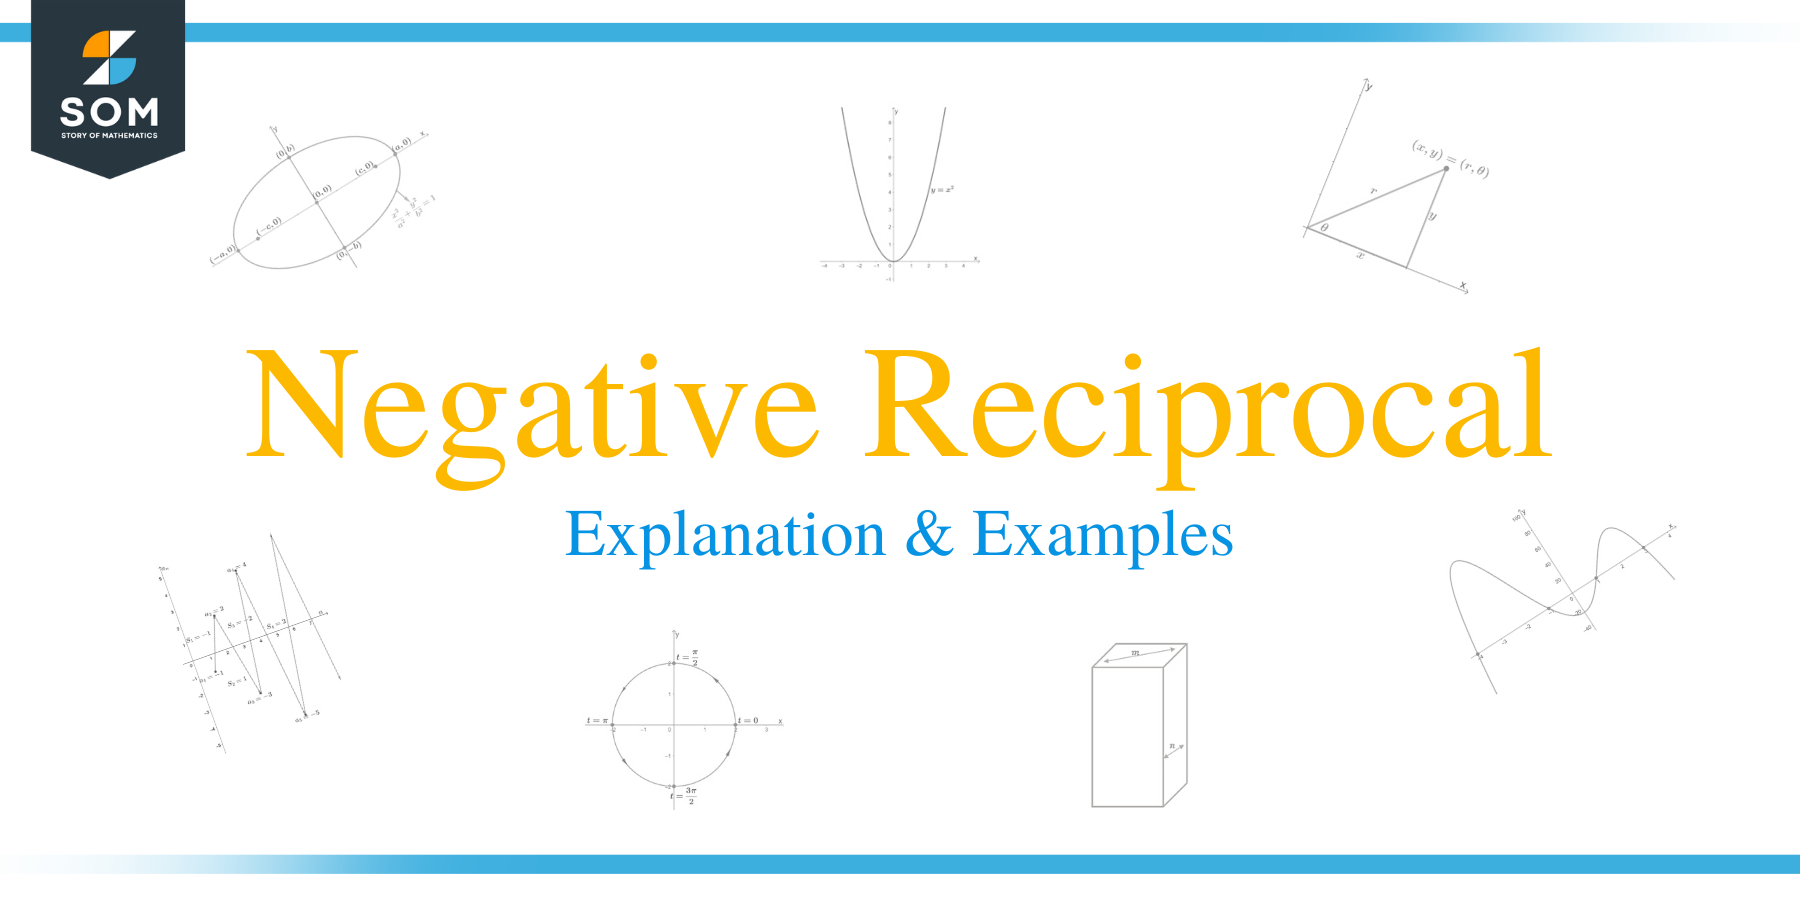 Negative reciprocal